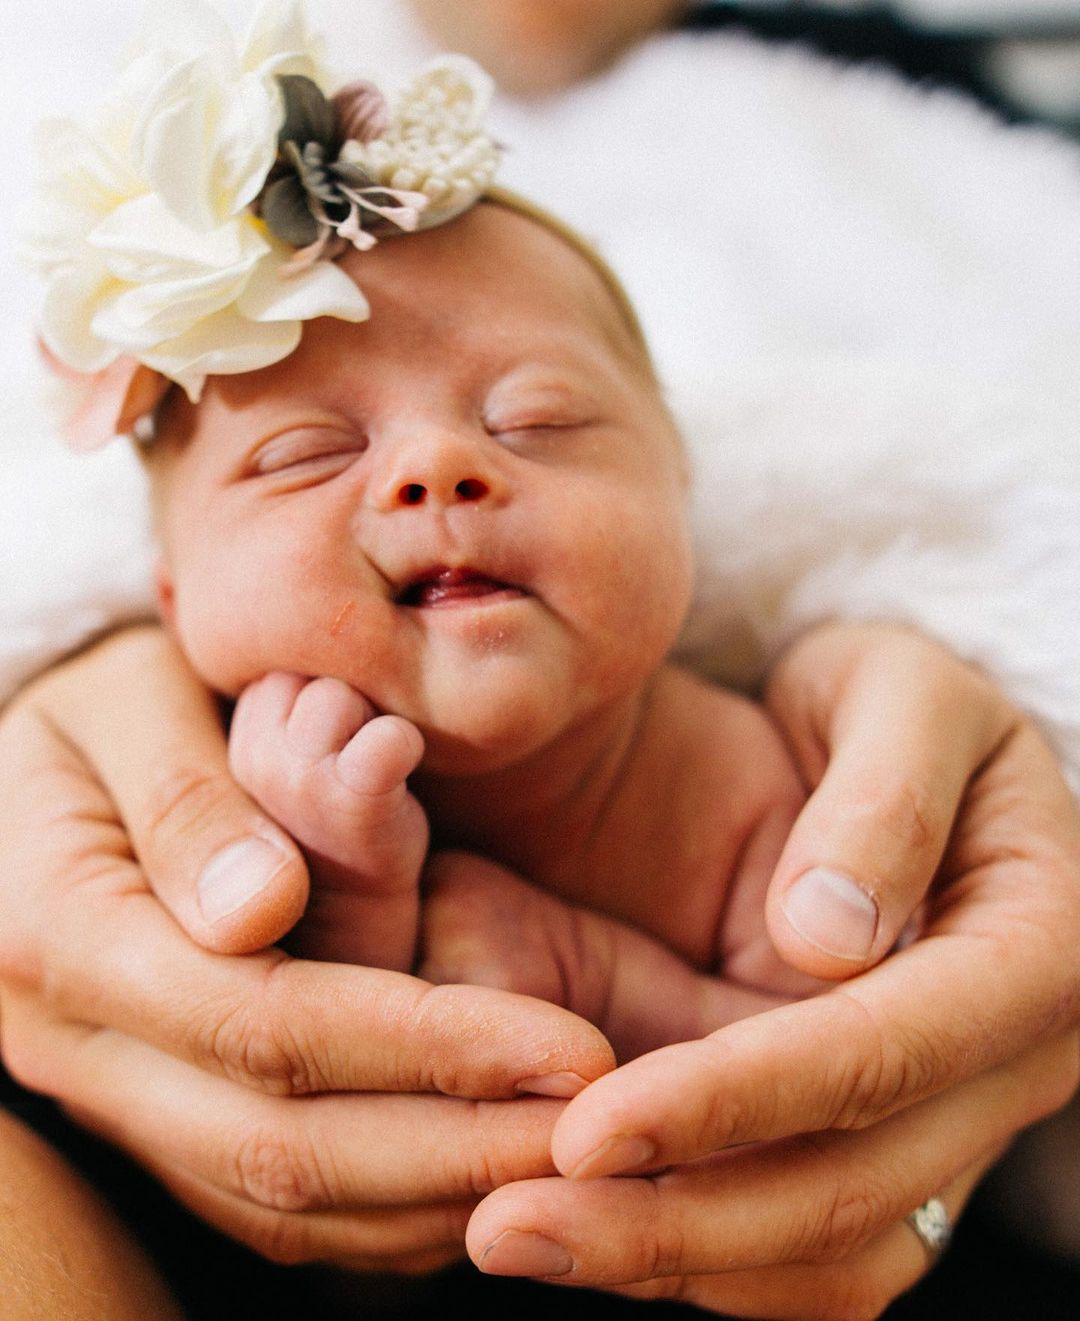 Baby Aria was born with Down syndrome. (Courtesy of <a href="https://www.instagram.com/kirstinczernek/">Kirstin Czernek</a>)